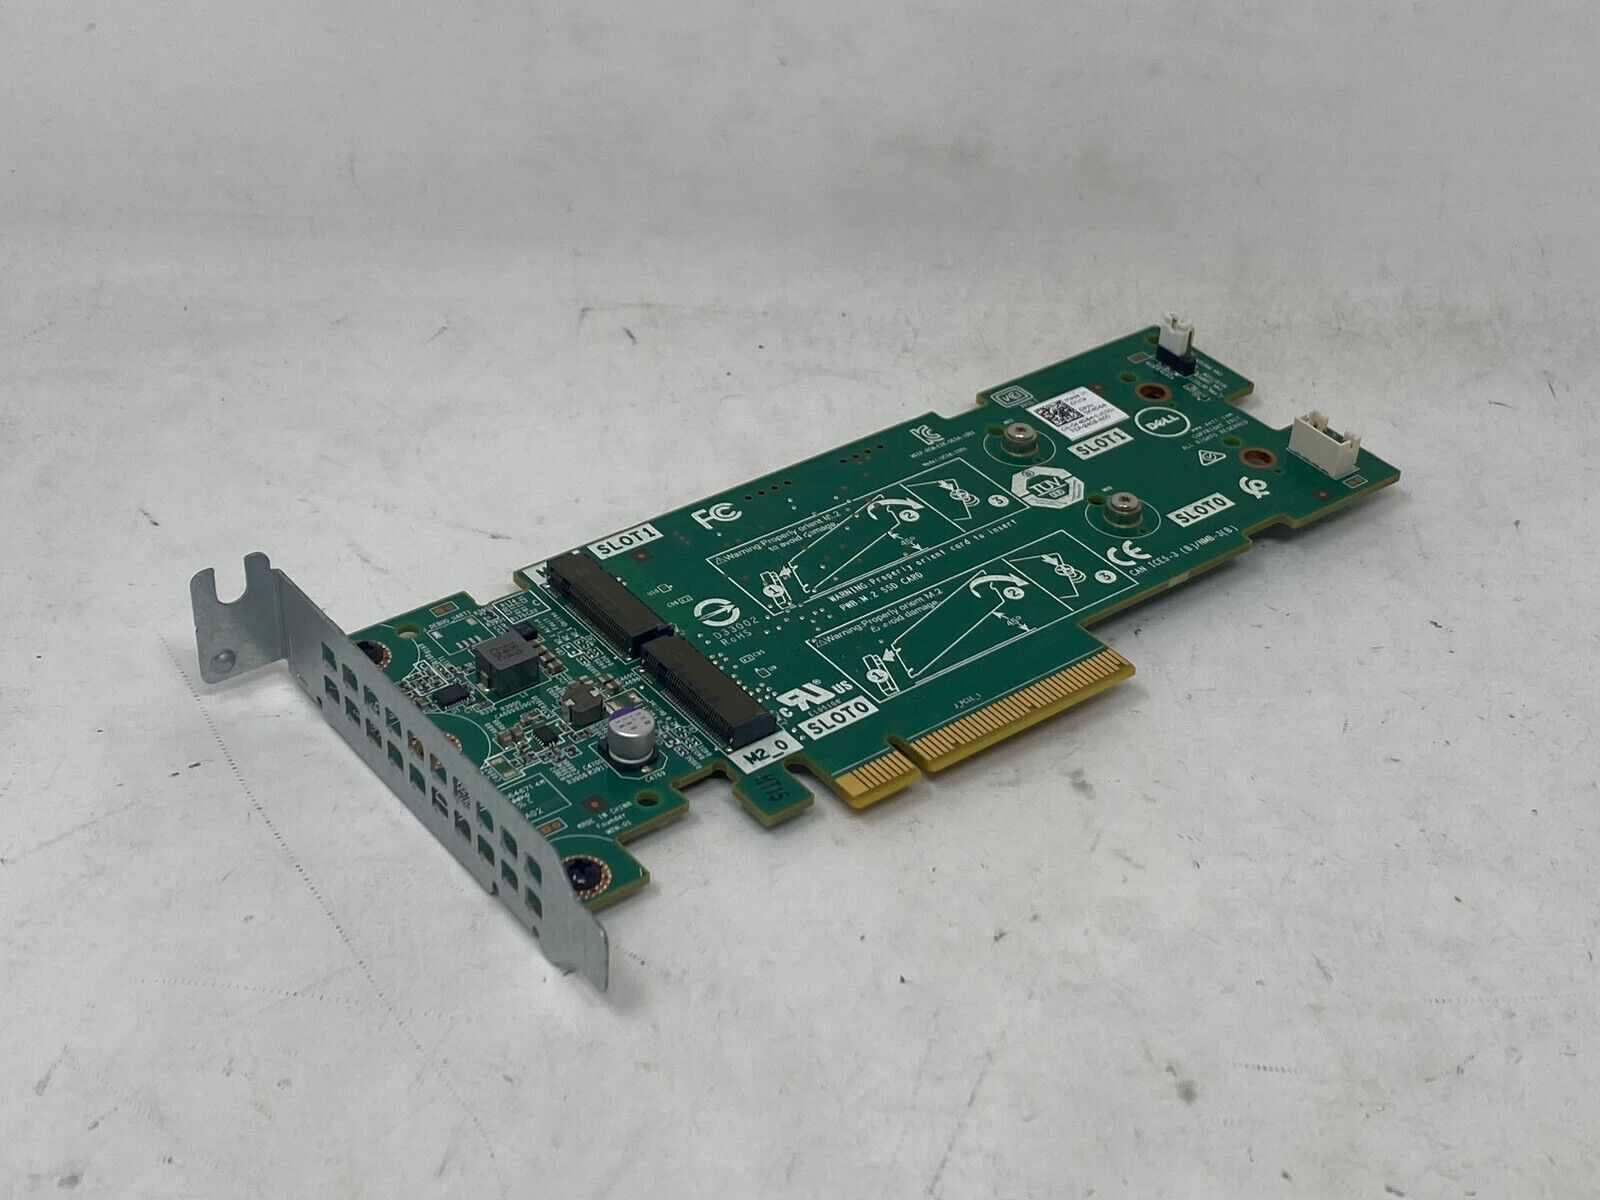 DELL 3JT49 2x M.2 BOSS-S1 Controller Adapter Card w/ 2x 240GB SATA SSD 919J9